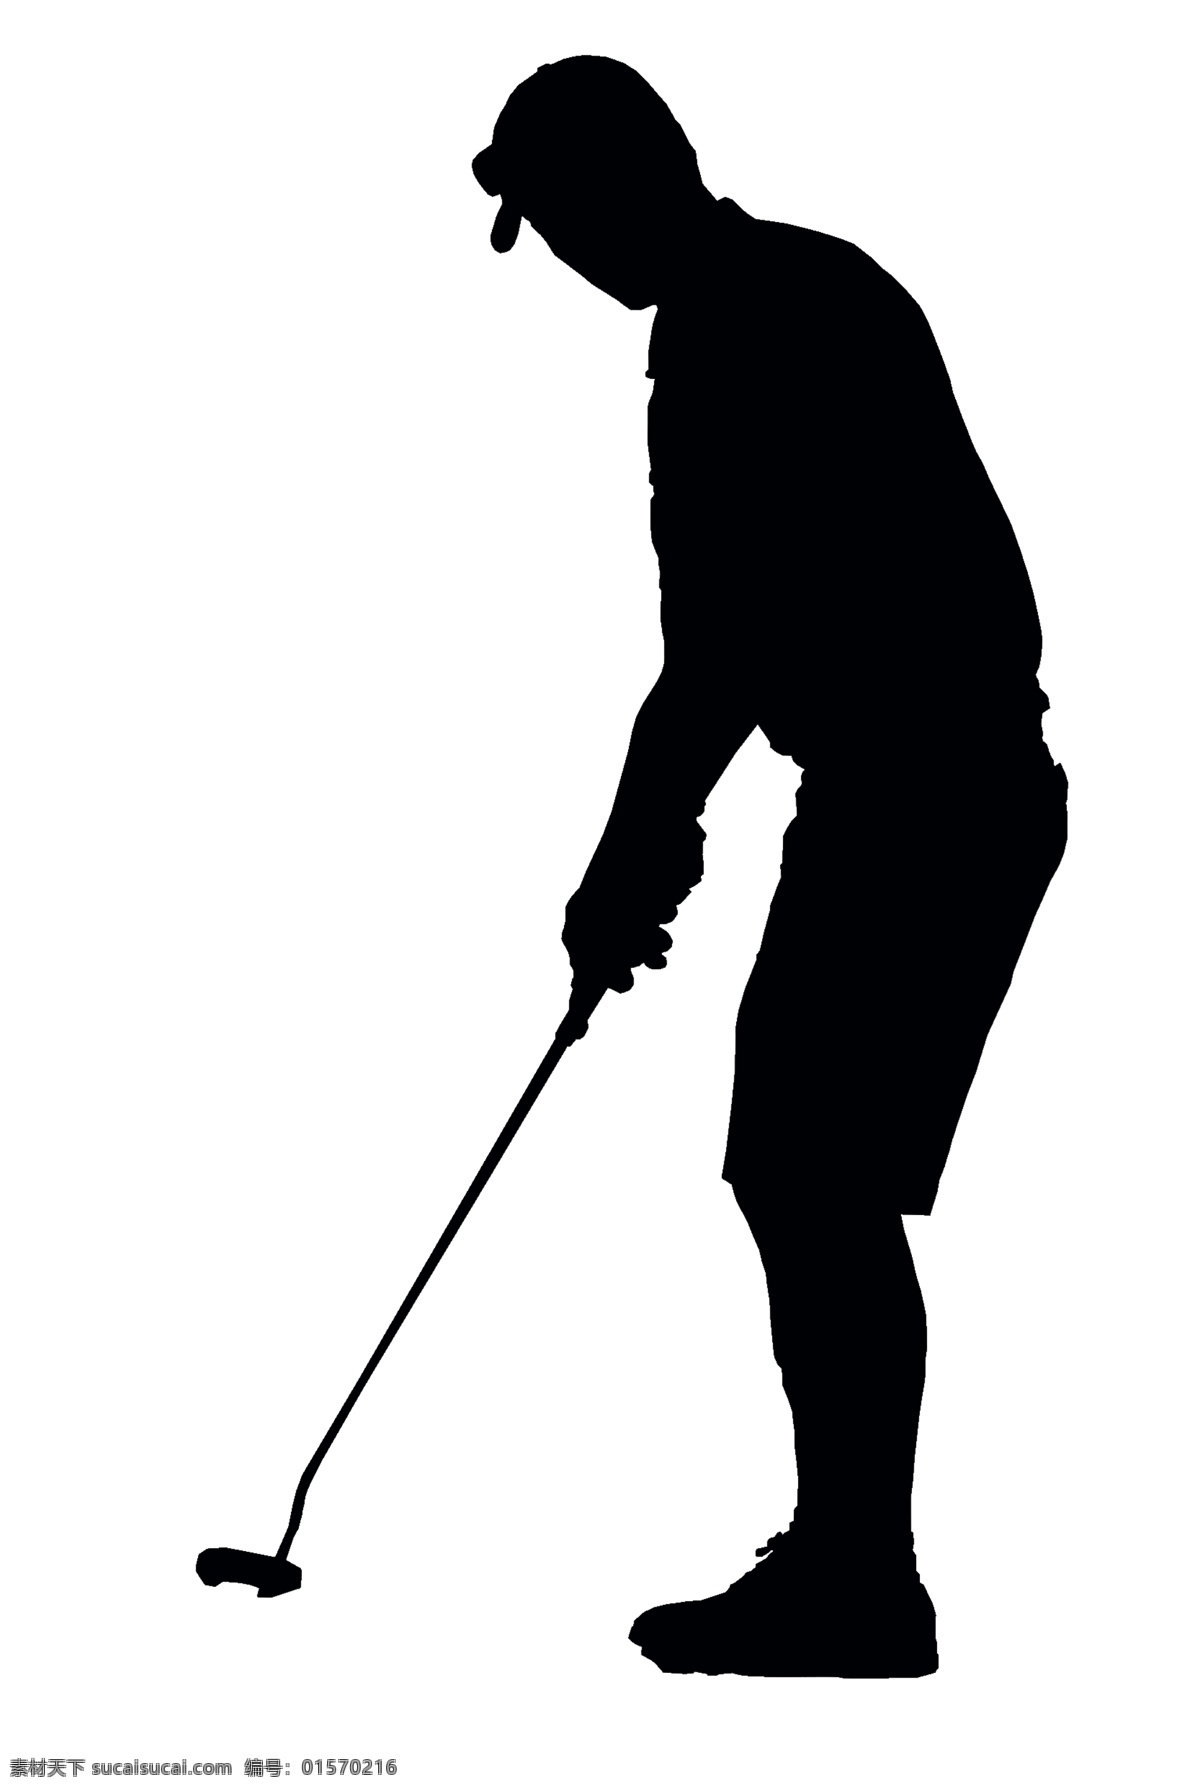 高尔夫 球运动 男人 剪影 免 抠 透明 图形 元素 高尔夫图片 高尔夫球运动 高尔夫素材 高尔夫元素